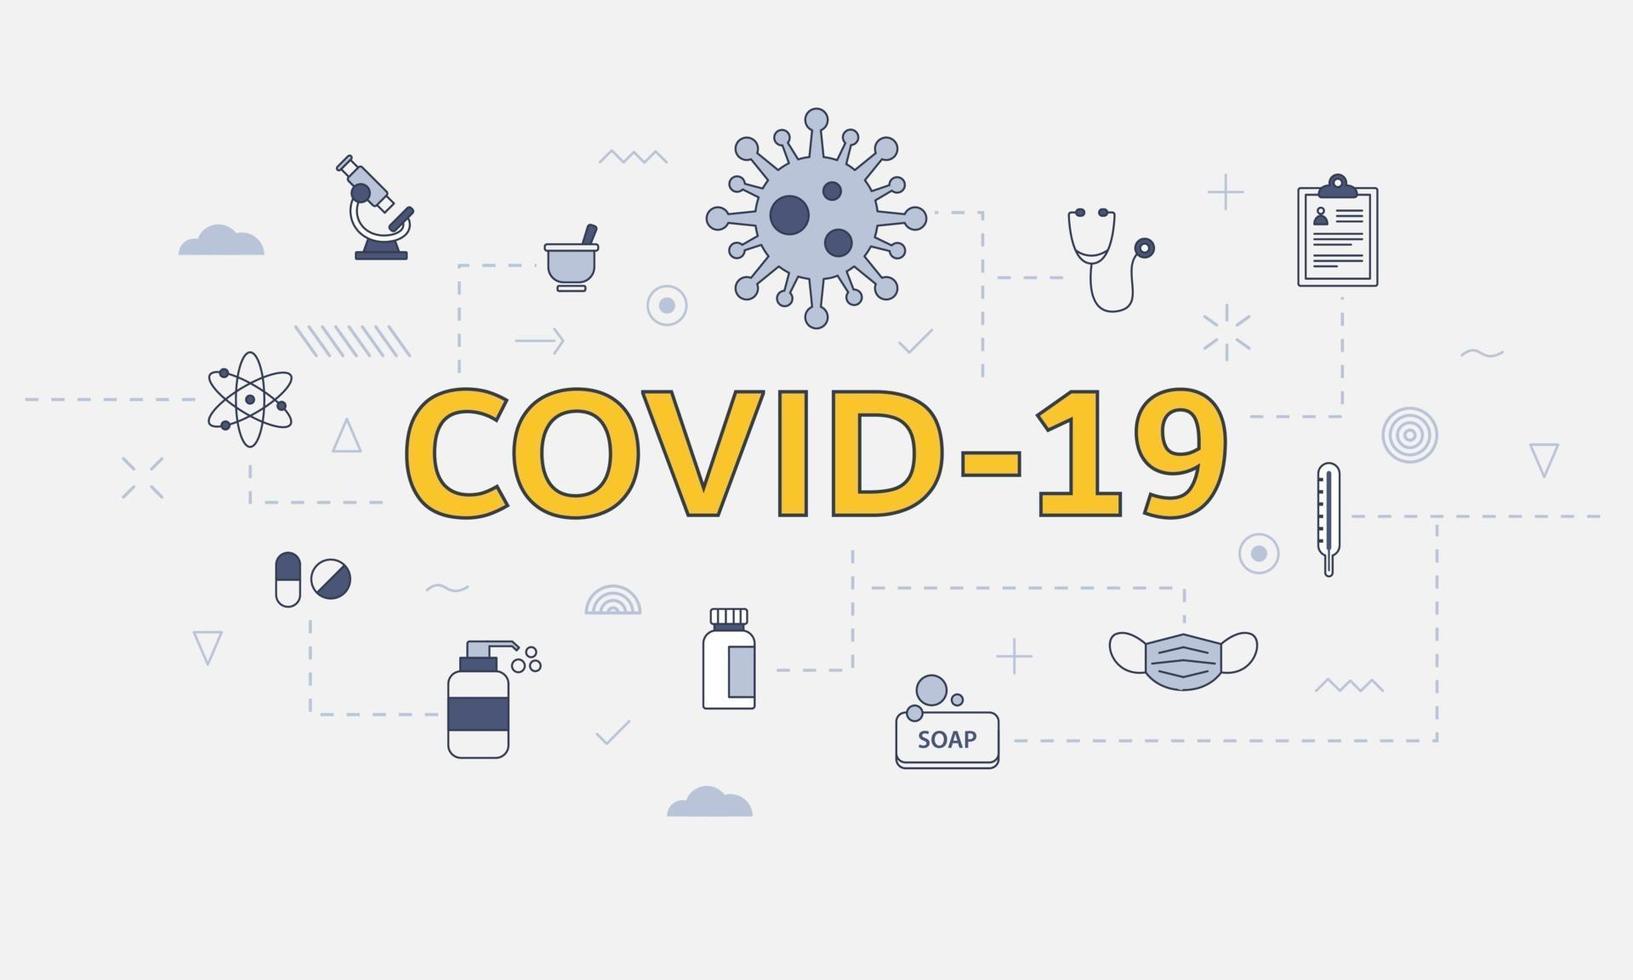 covid-19 coronavirus concept met icon set met groot woord of tekst in het midden vector